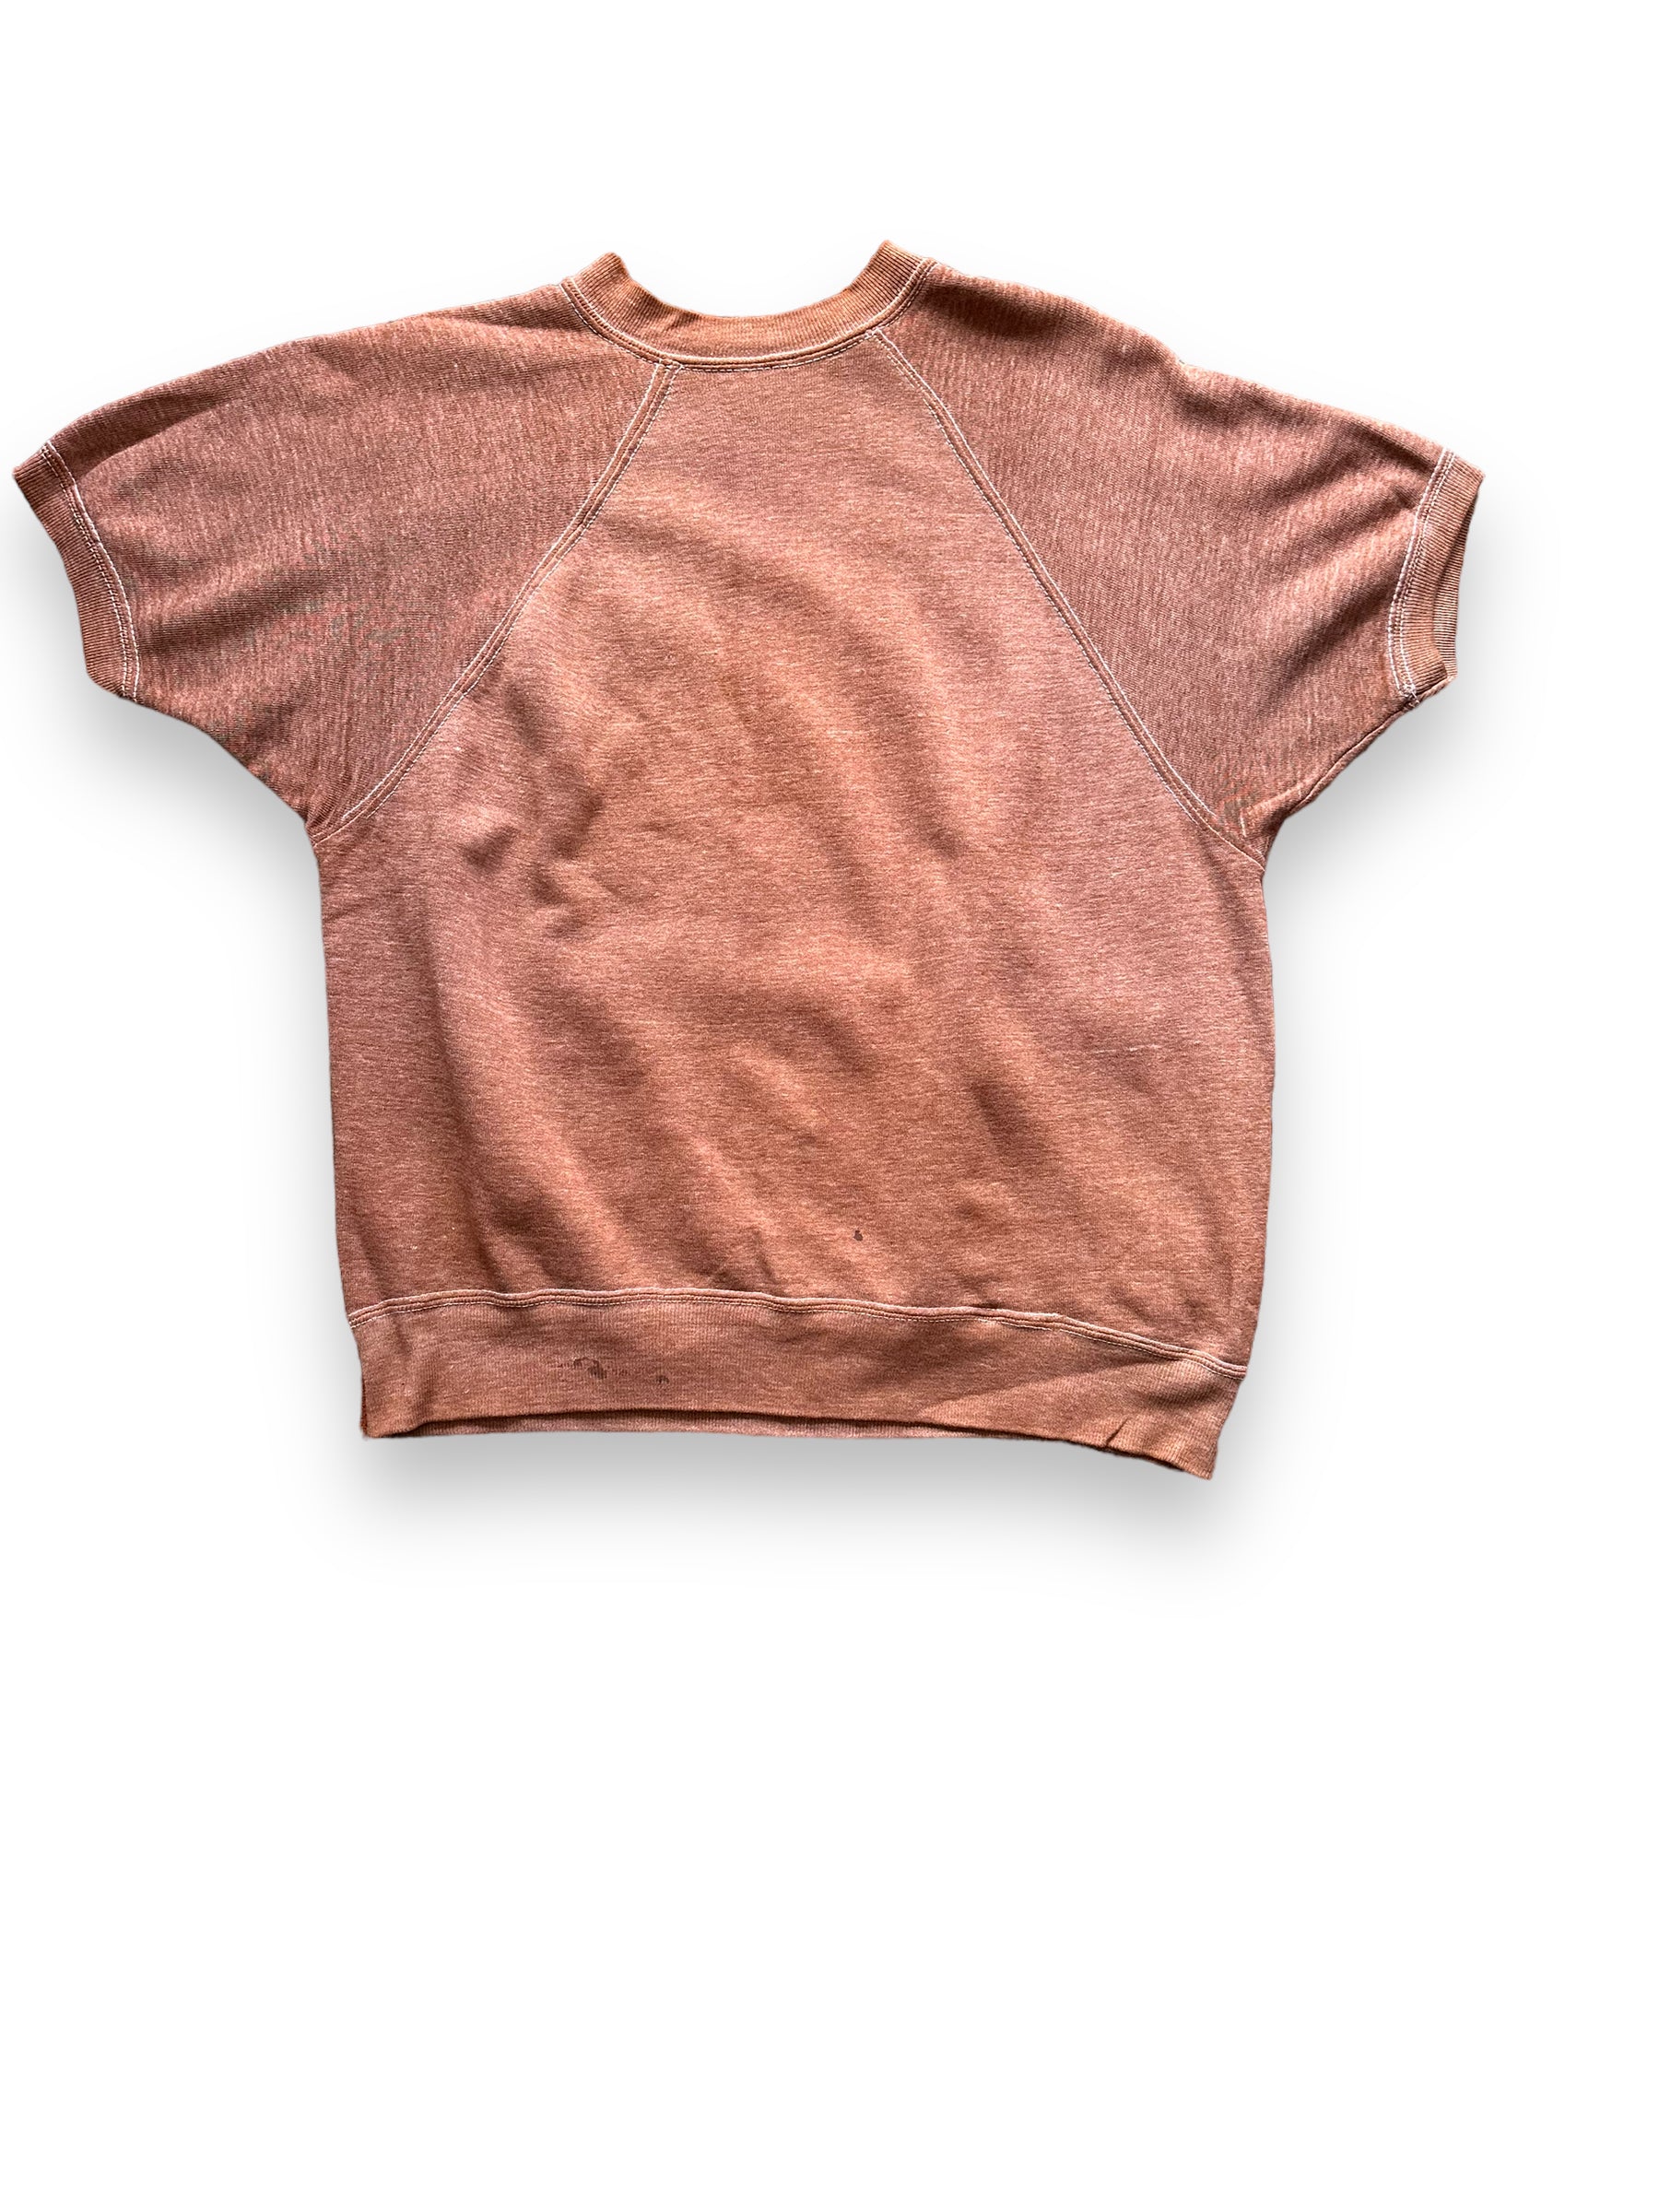 Rear View of Vintage Brown Short Sleeve Crewneck Sweatshirt SZ M | Barn Owl Vintage Clothing | Seattle Vintage Sweatshirts